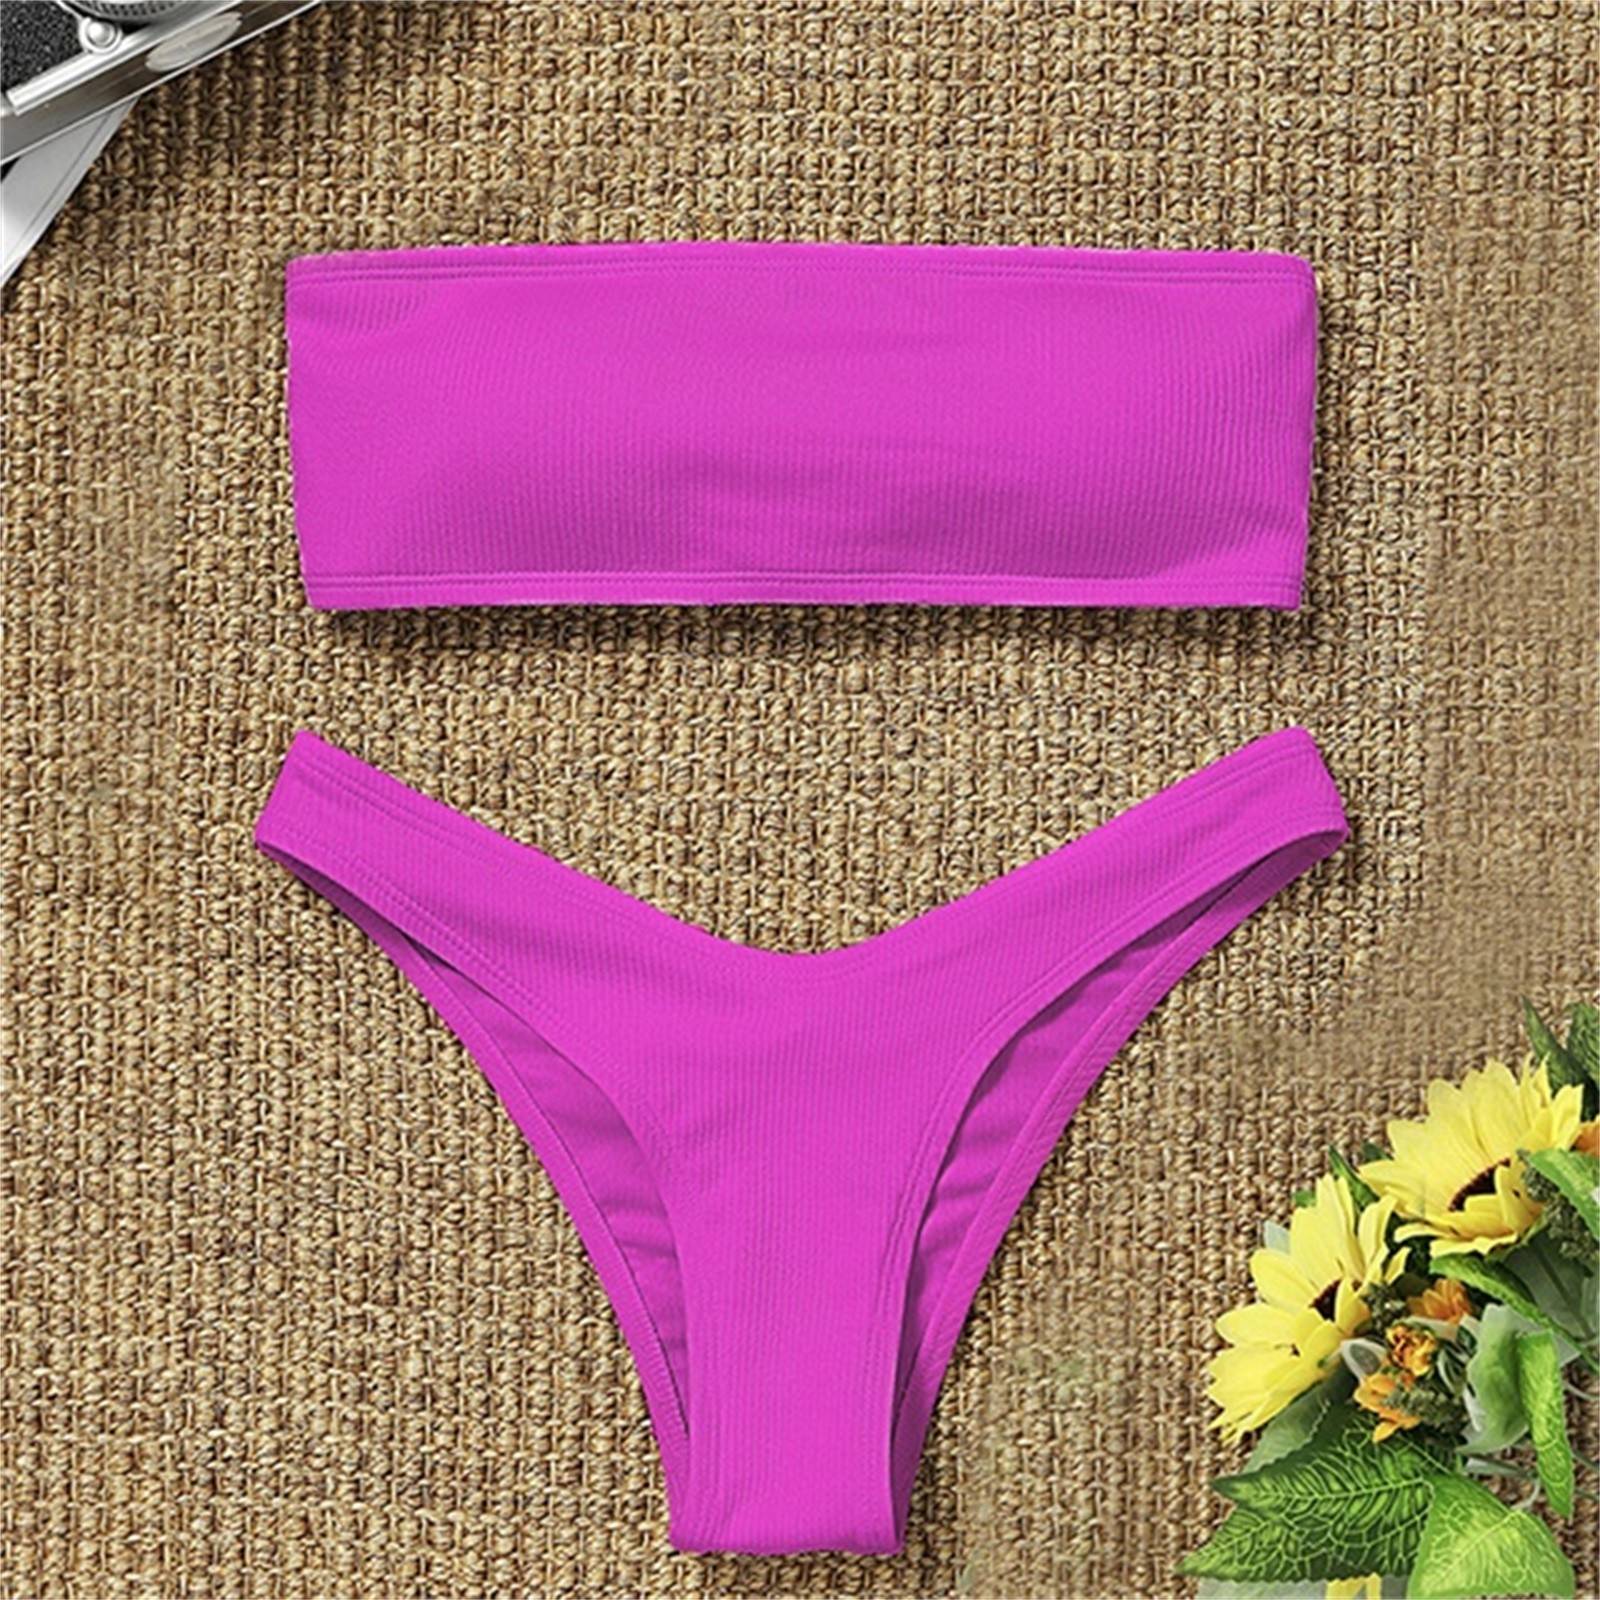 Strapless Bikini 2021 Woman 2 Piece Swimsuit Solid Swimwear Sexy Bikini Set Female Swimwear High Waist Push up Biquini Pink Blue